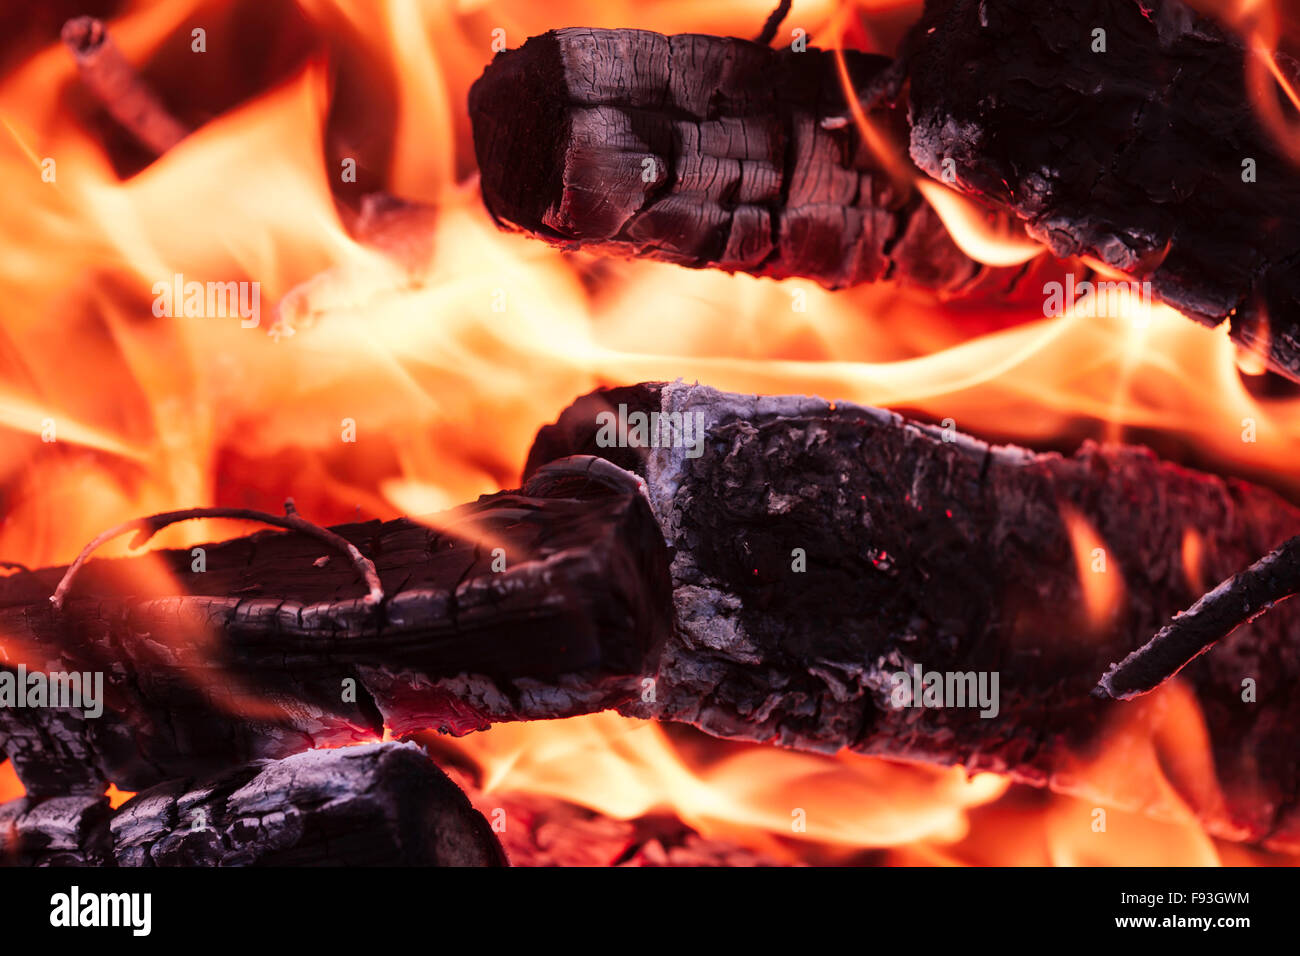 flame coals firewood closeup Stock Photo